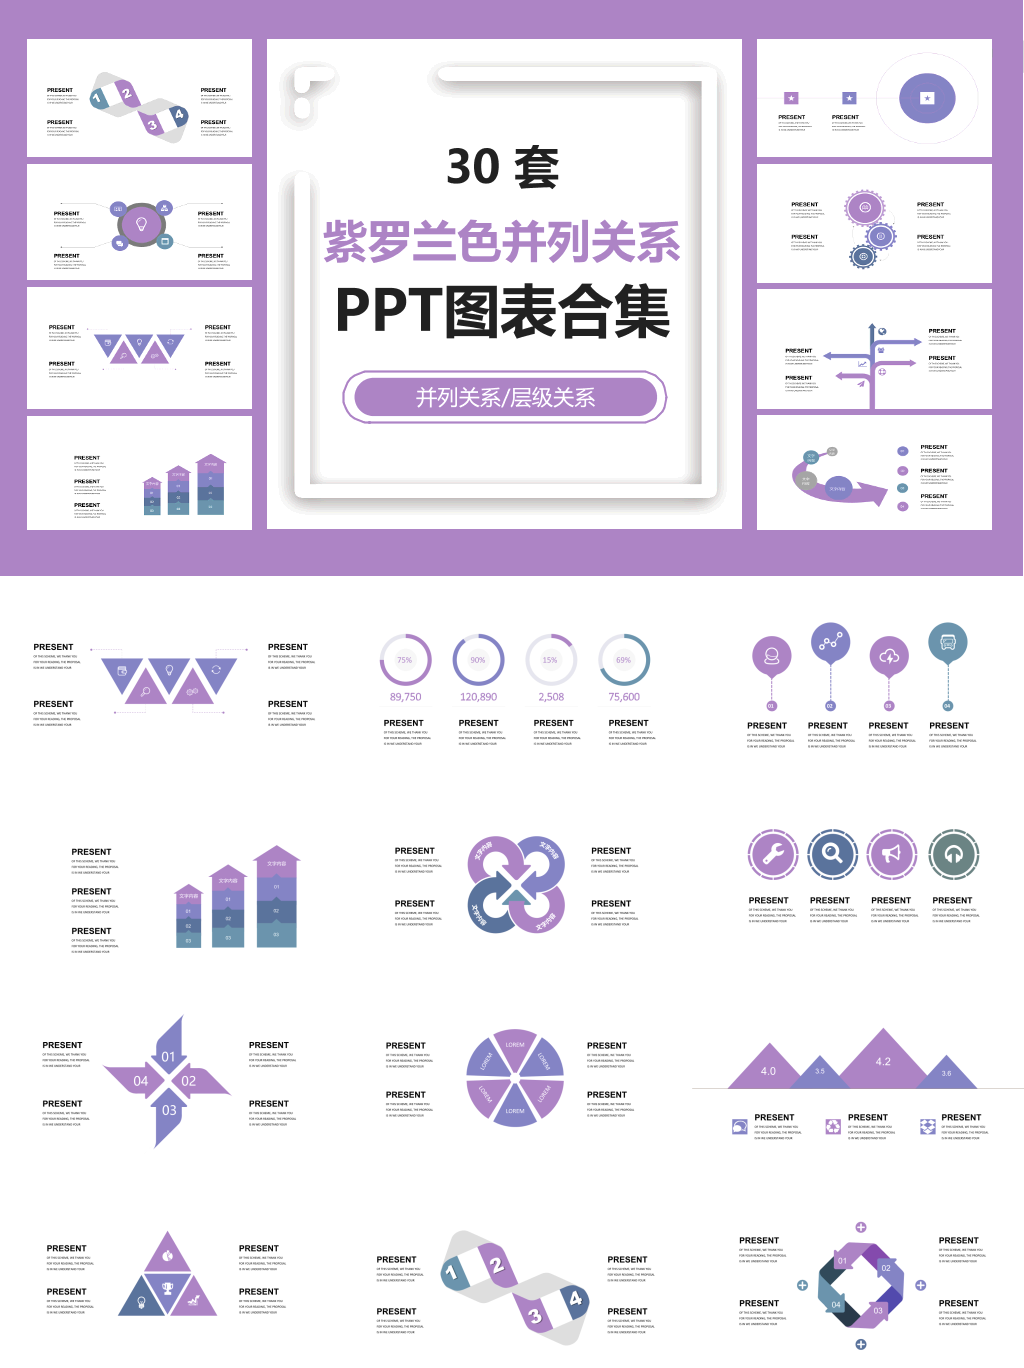 紫罗兰色并列关系PPT图表合集